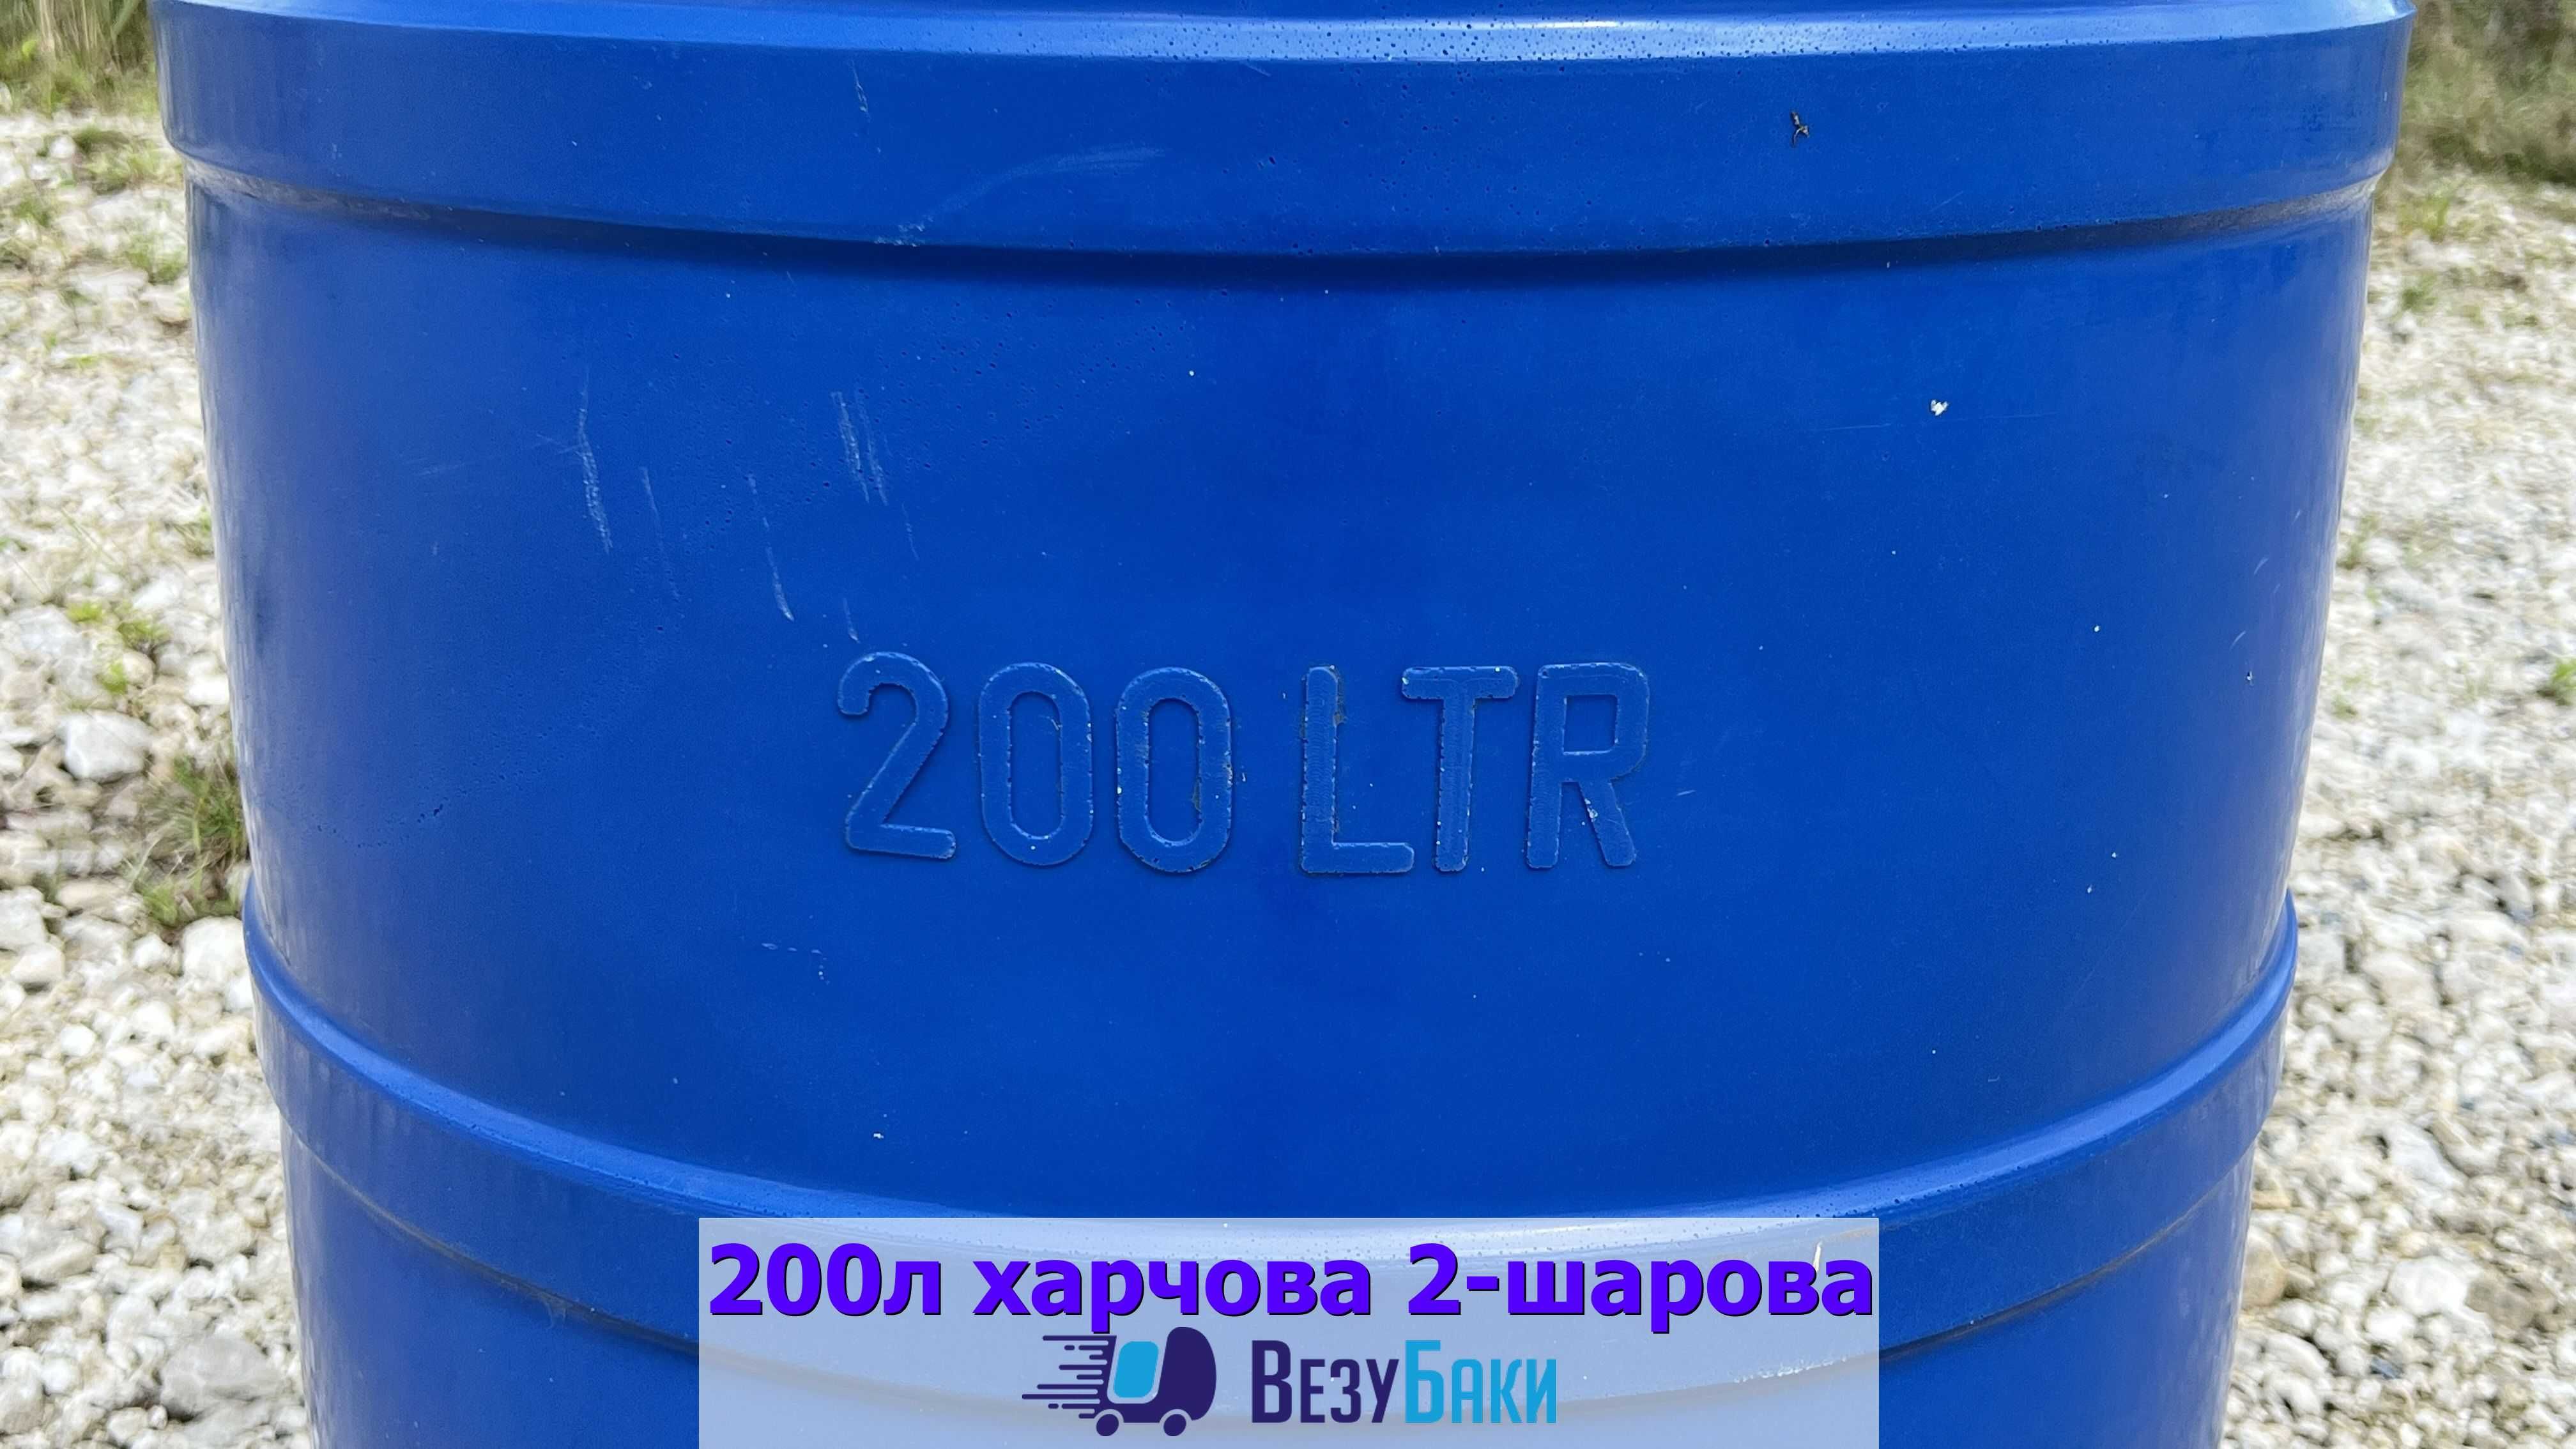 Ємкість для запасу води 200л харчова 2-шарова .